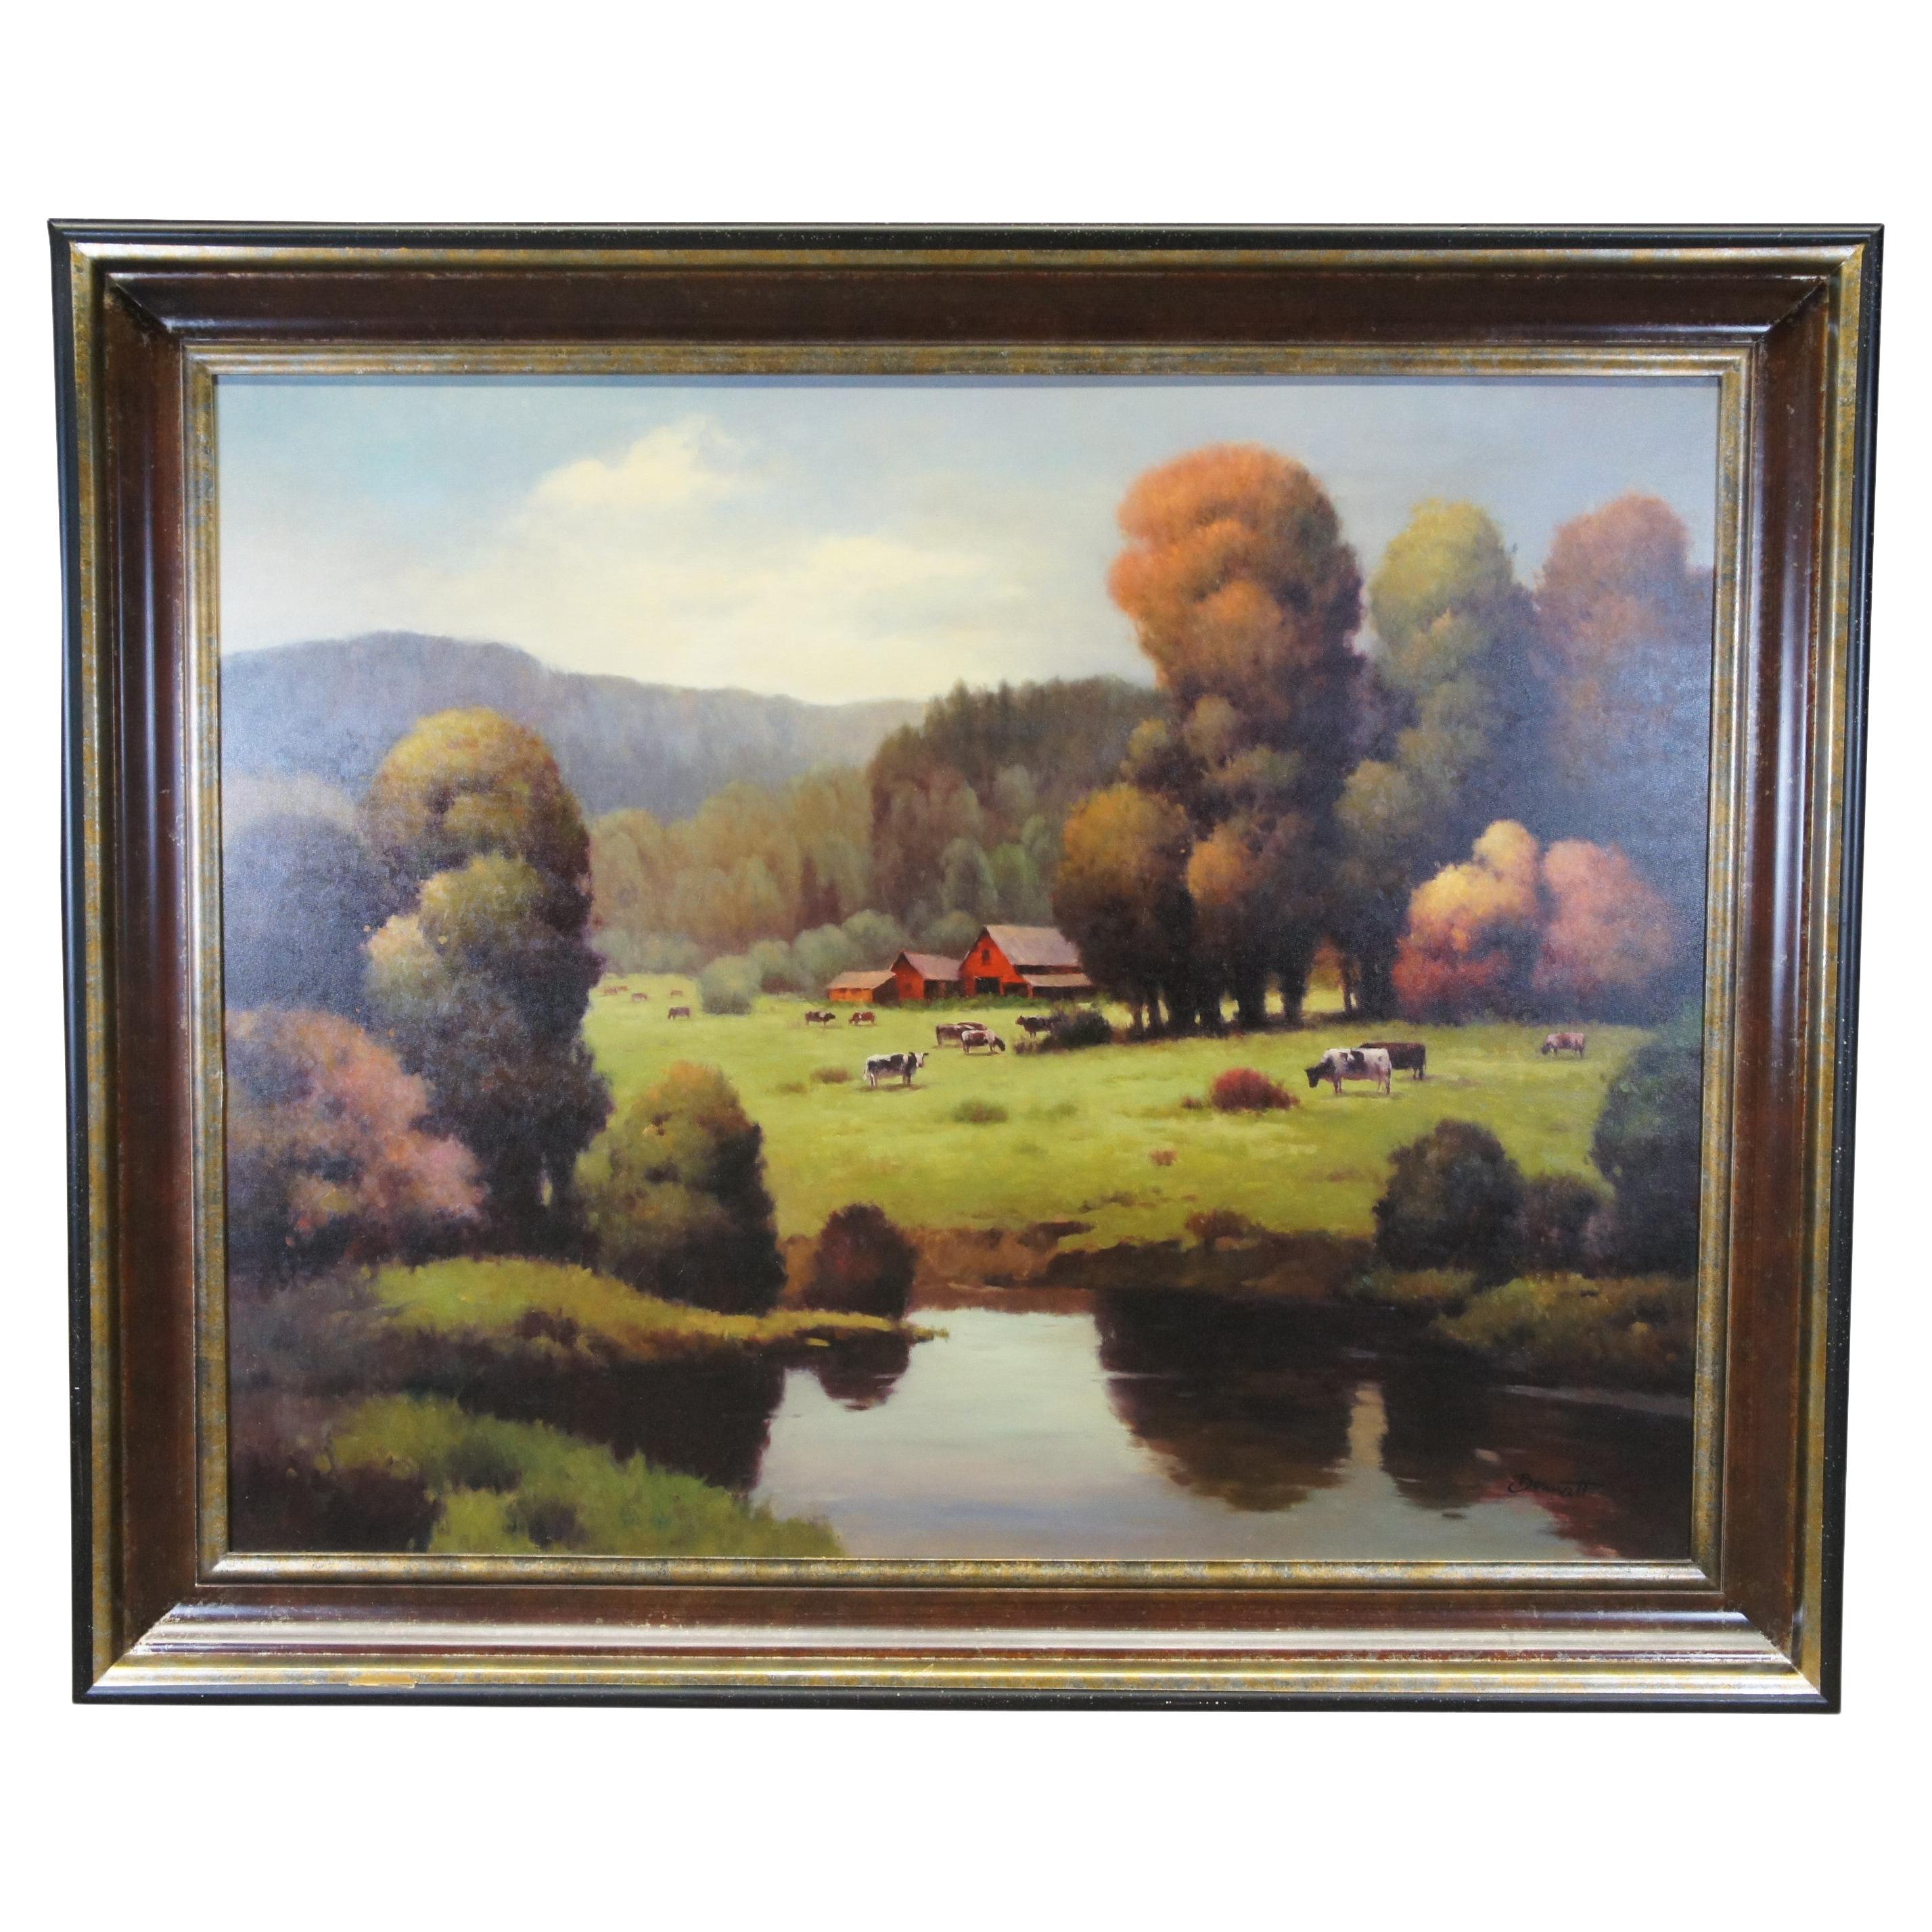 Bonnatt Pastoral Country Farmhouse Landscape Oil Painting on Canvas 71"